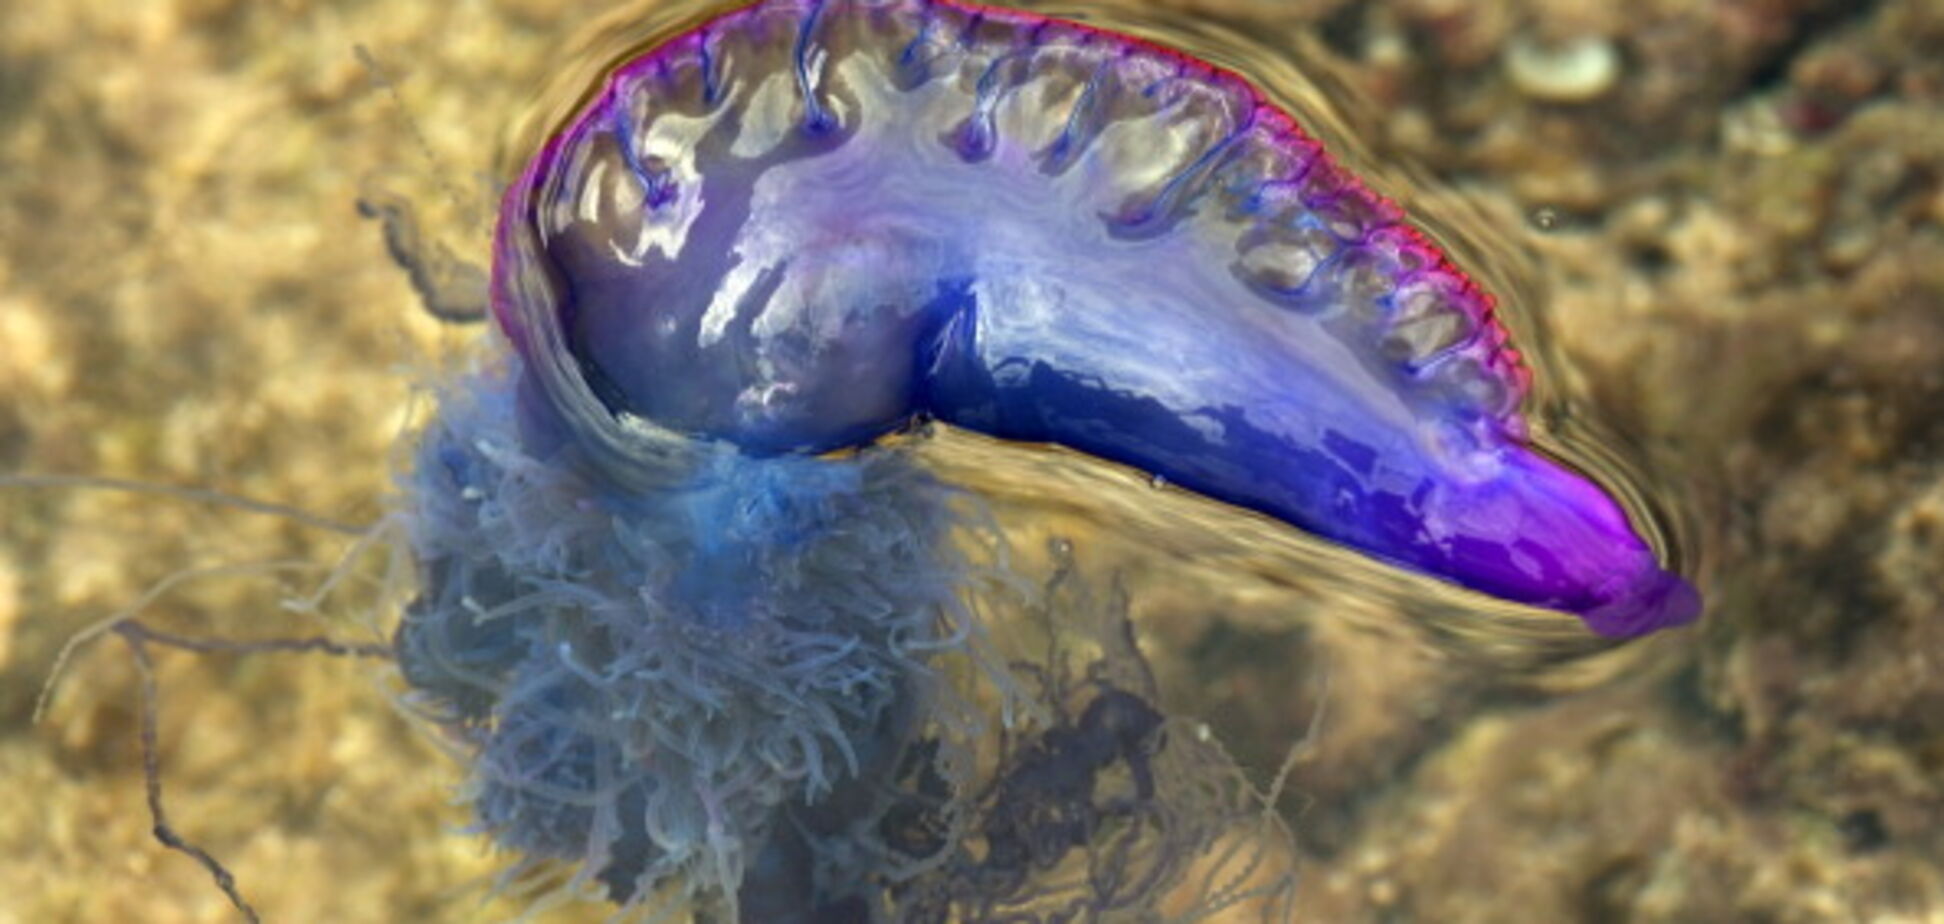 Тысячи пострадавших: Австралию атаковали медузы-убийцы. Фото и видео